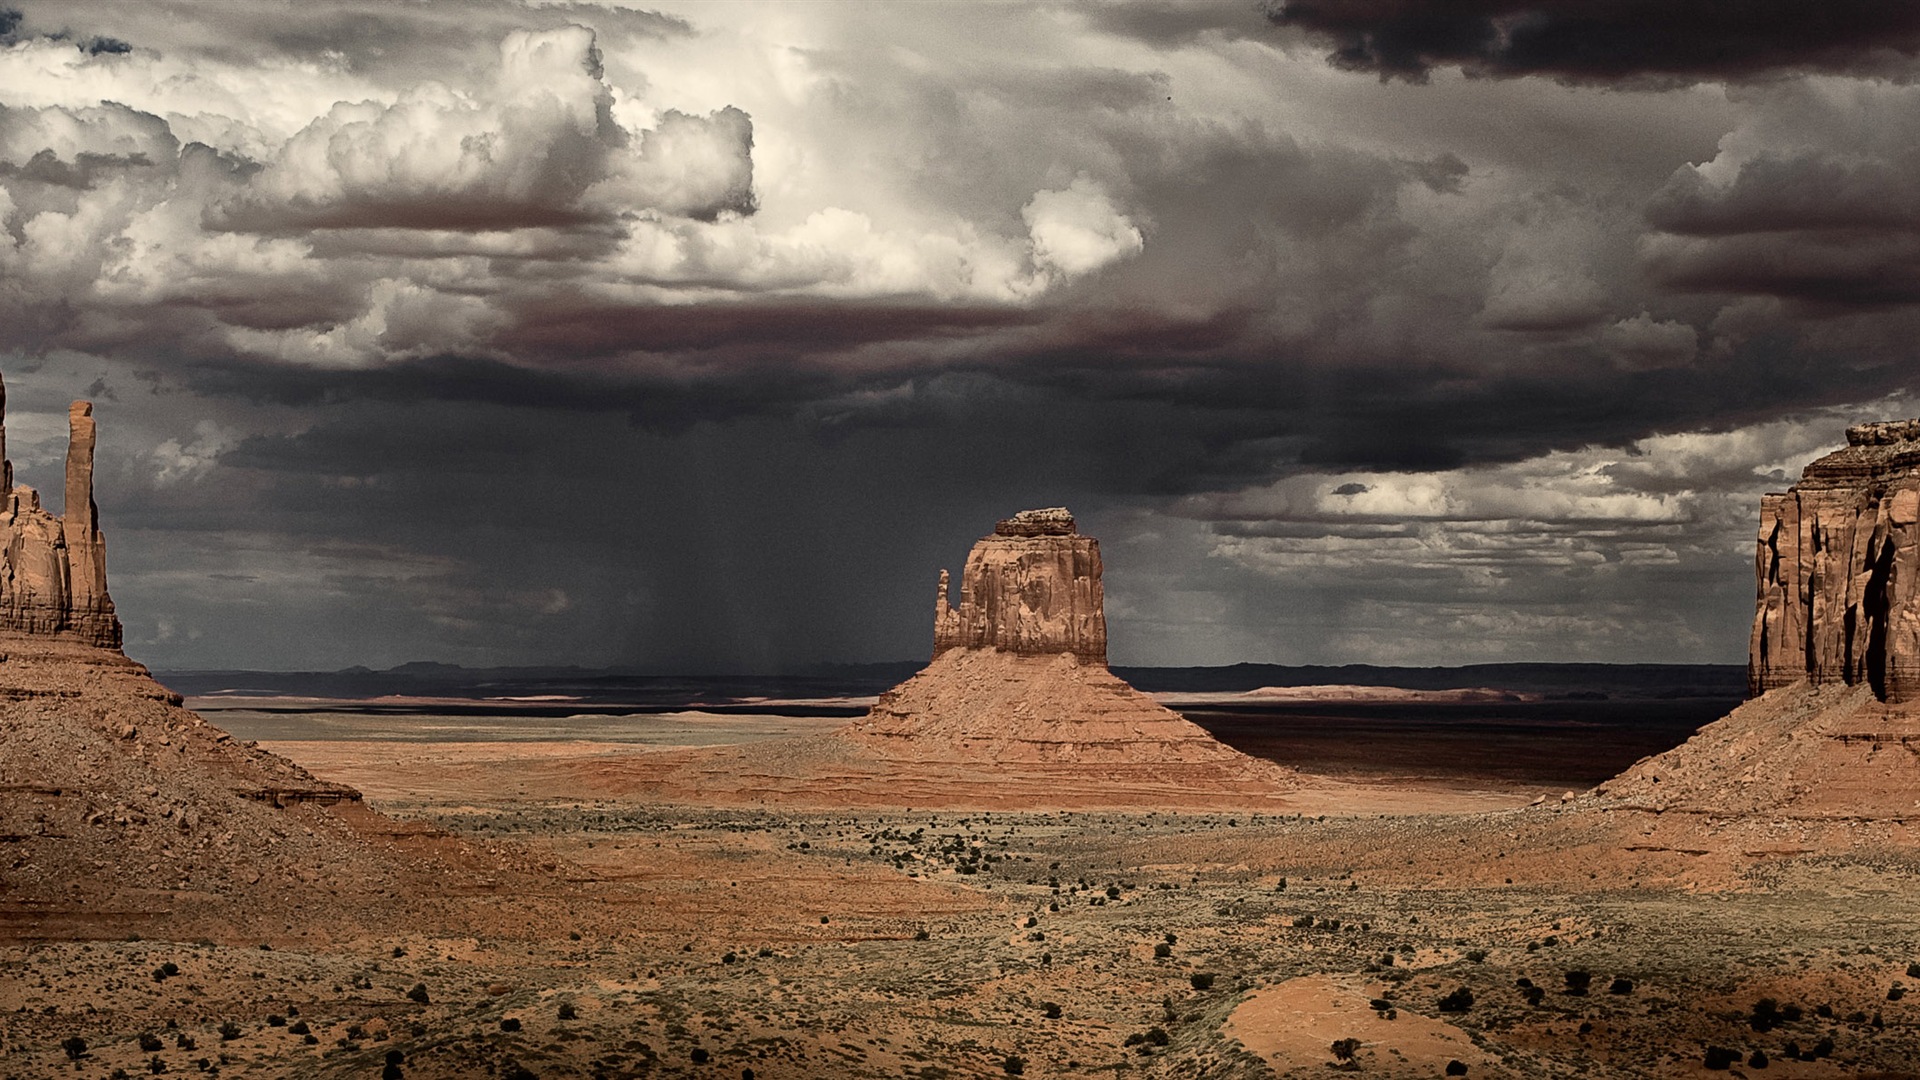 Les déserts chauds et arides, de Windows 8 fonds d'écran widescreen panoramique #7 - 1920x1080